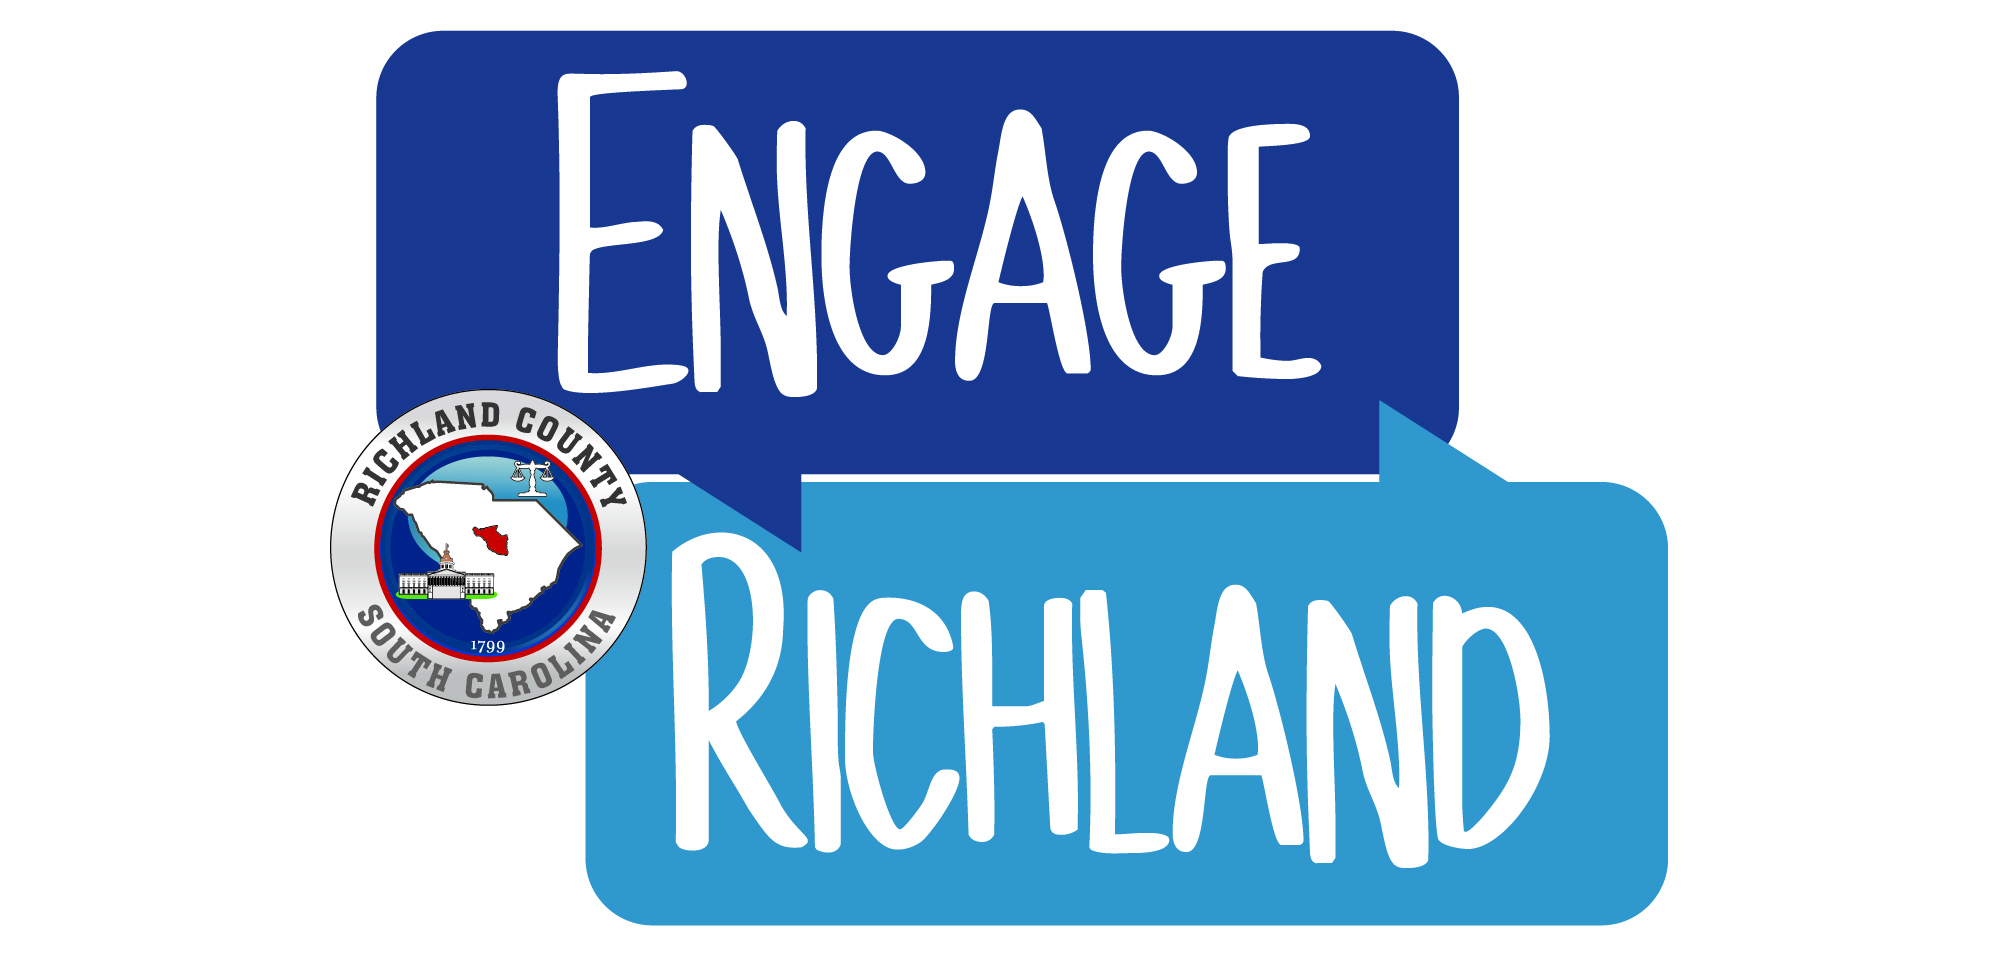 Engage Richland logo